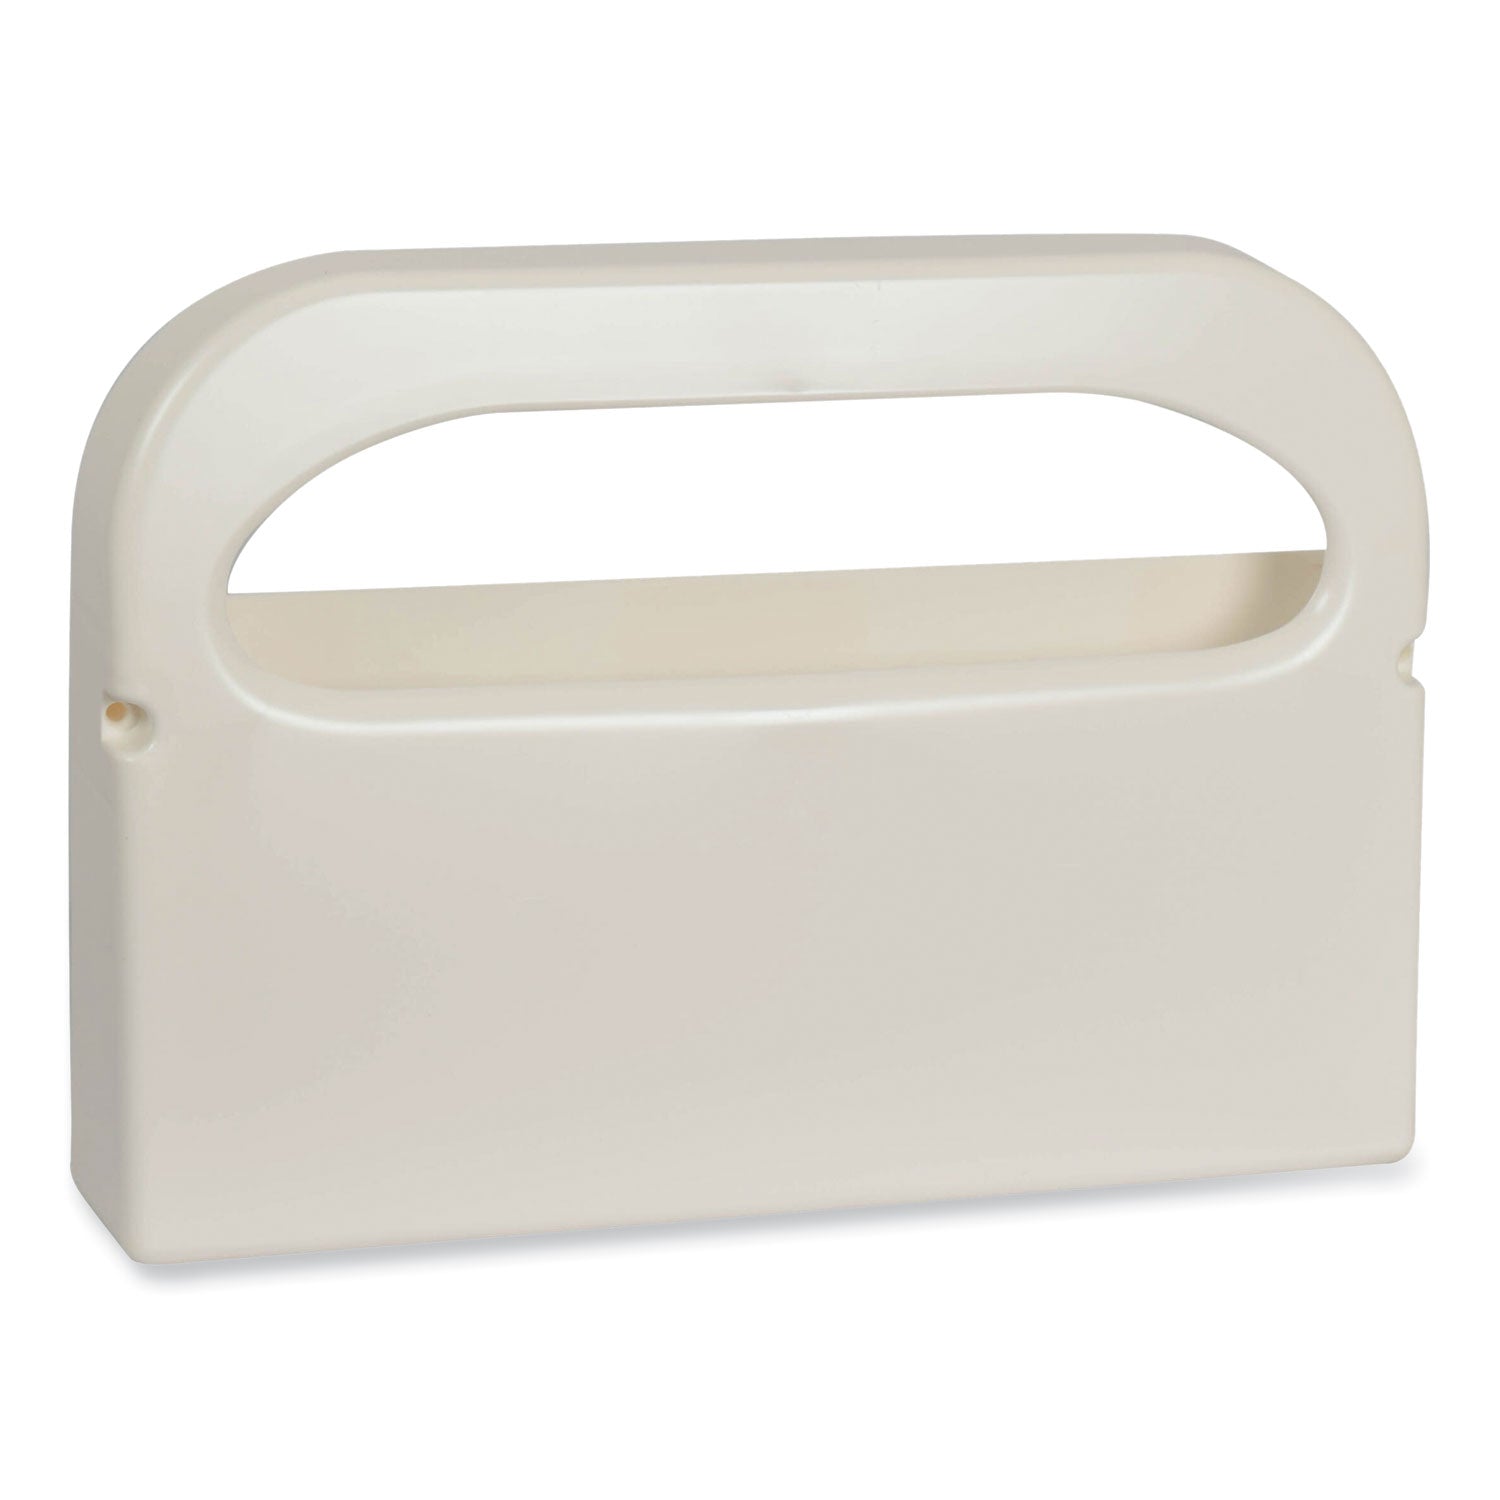 toilet-seat-cover-dispenser-16-x-3-x-115-white-12-carton_trk99a - 1